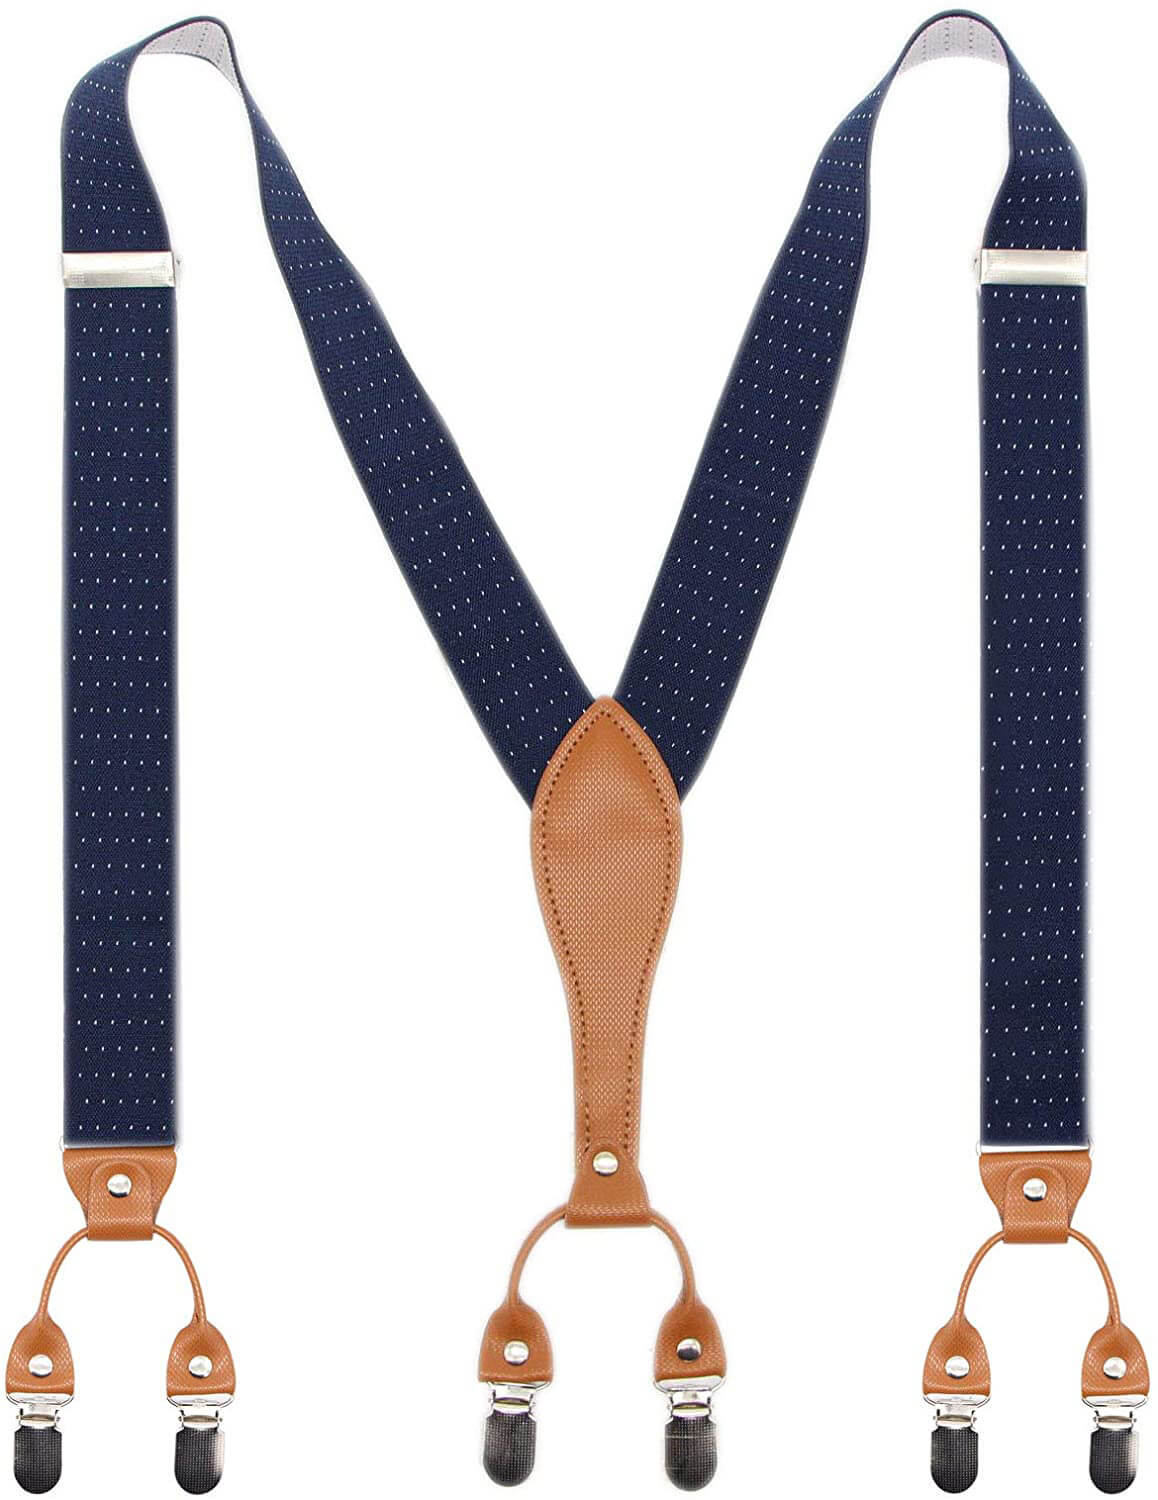 Mens Suspender Wide Leather 6 Metal Clips Adjustable Straps Y Shape